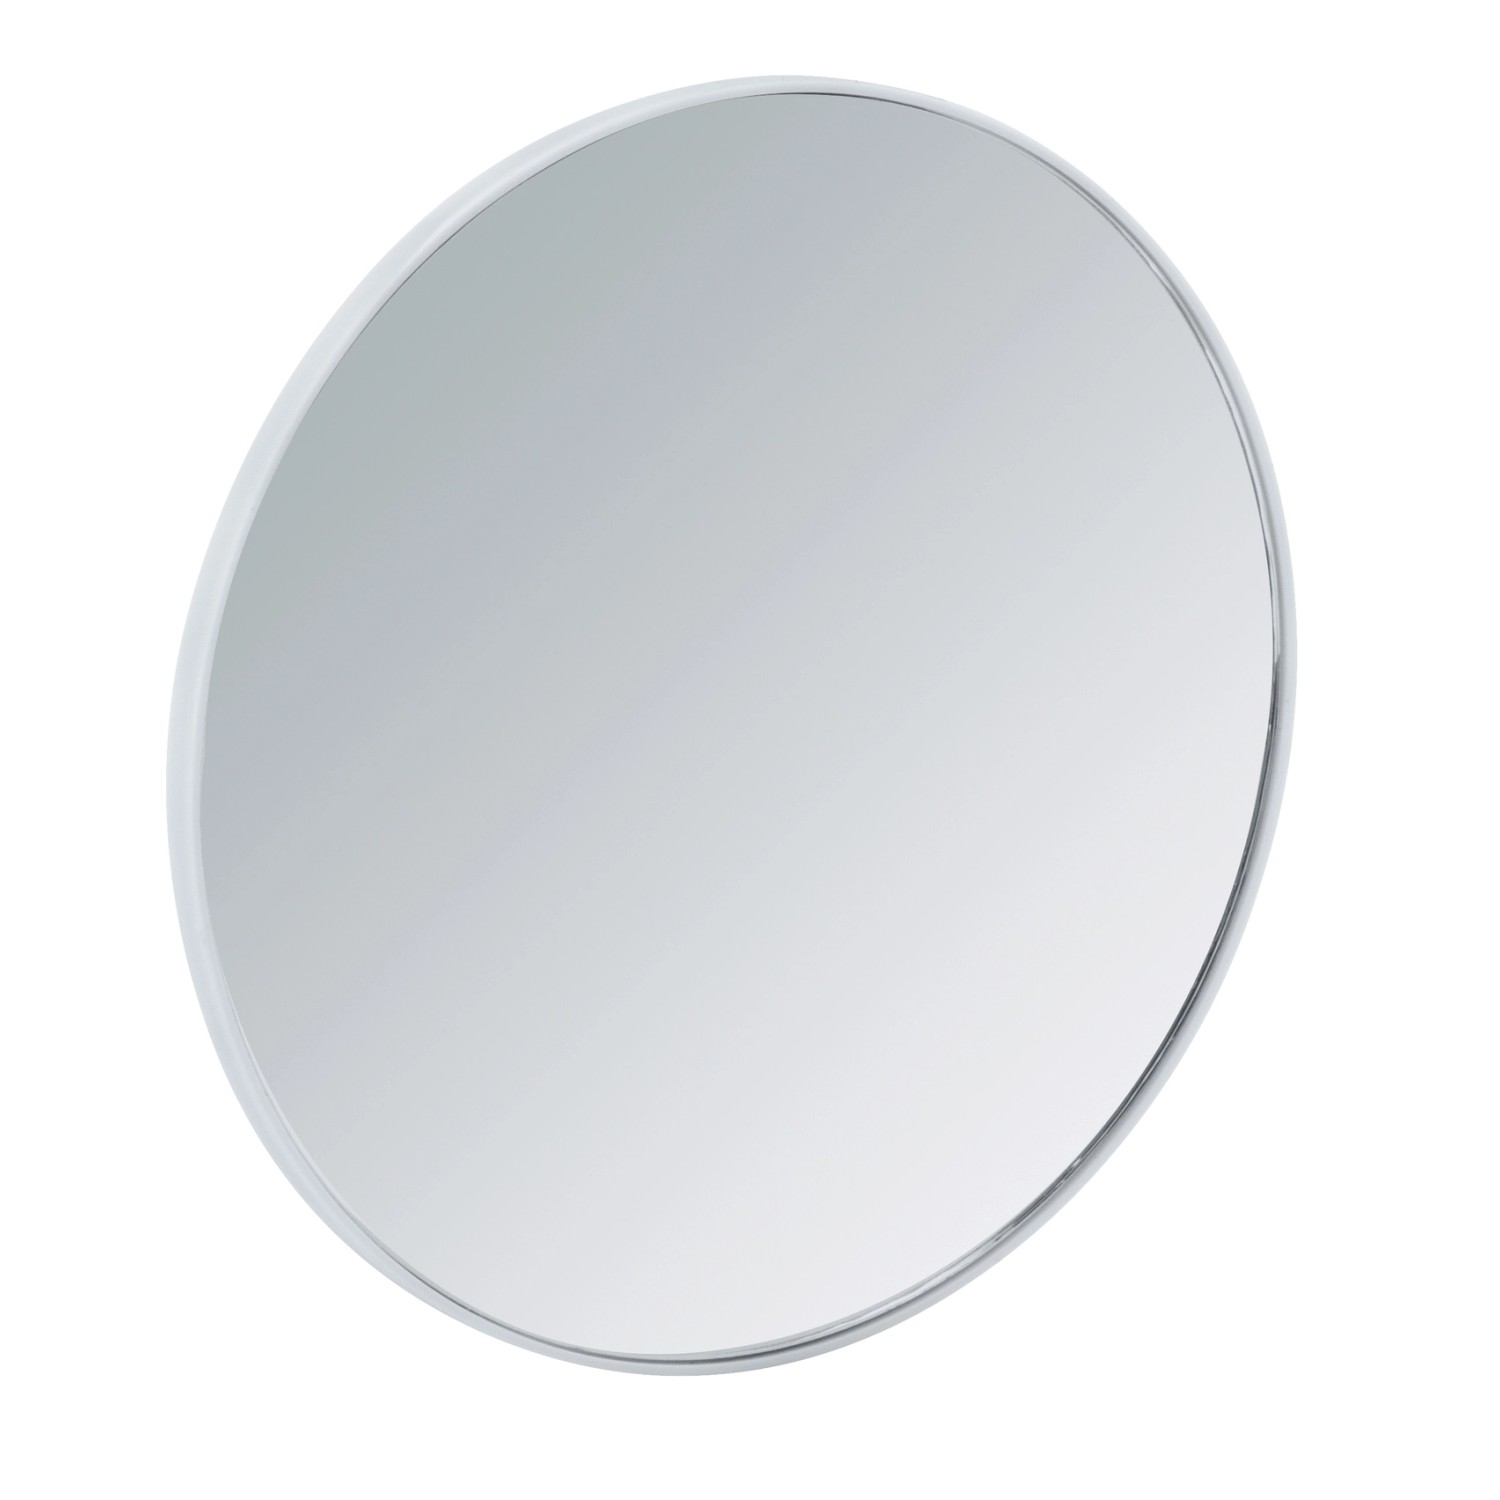 Wenko Vergrösserungs-Kosmetik-Wandspiegel 3-fach kaufen bei OBI